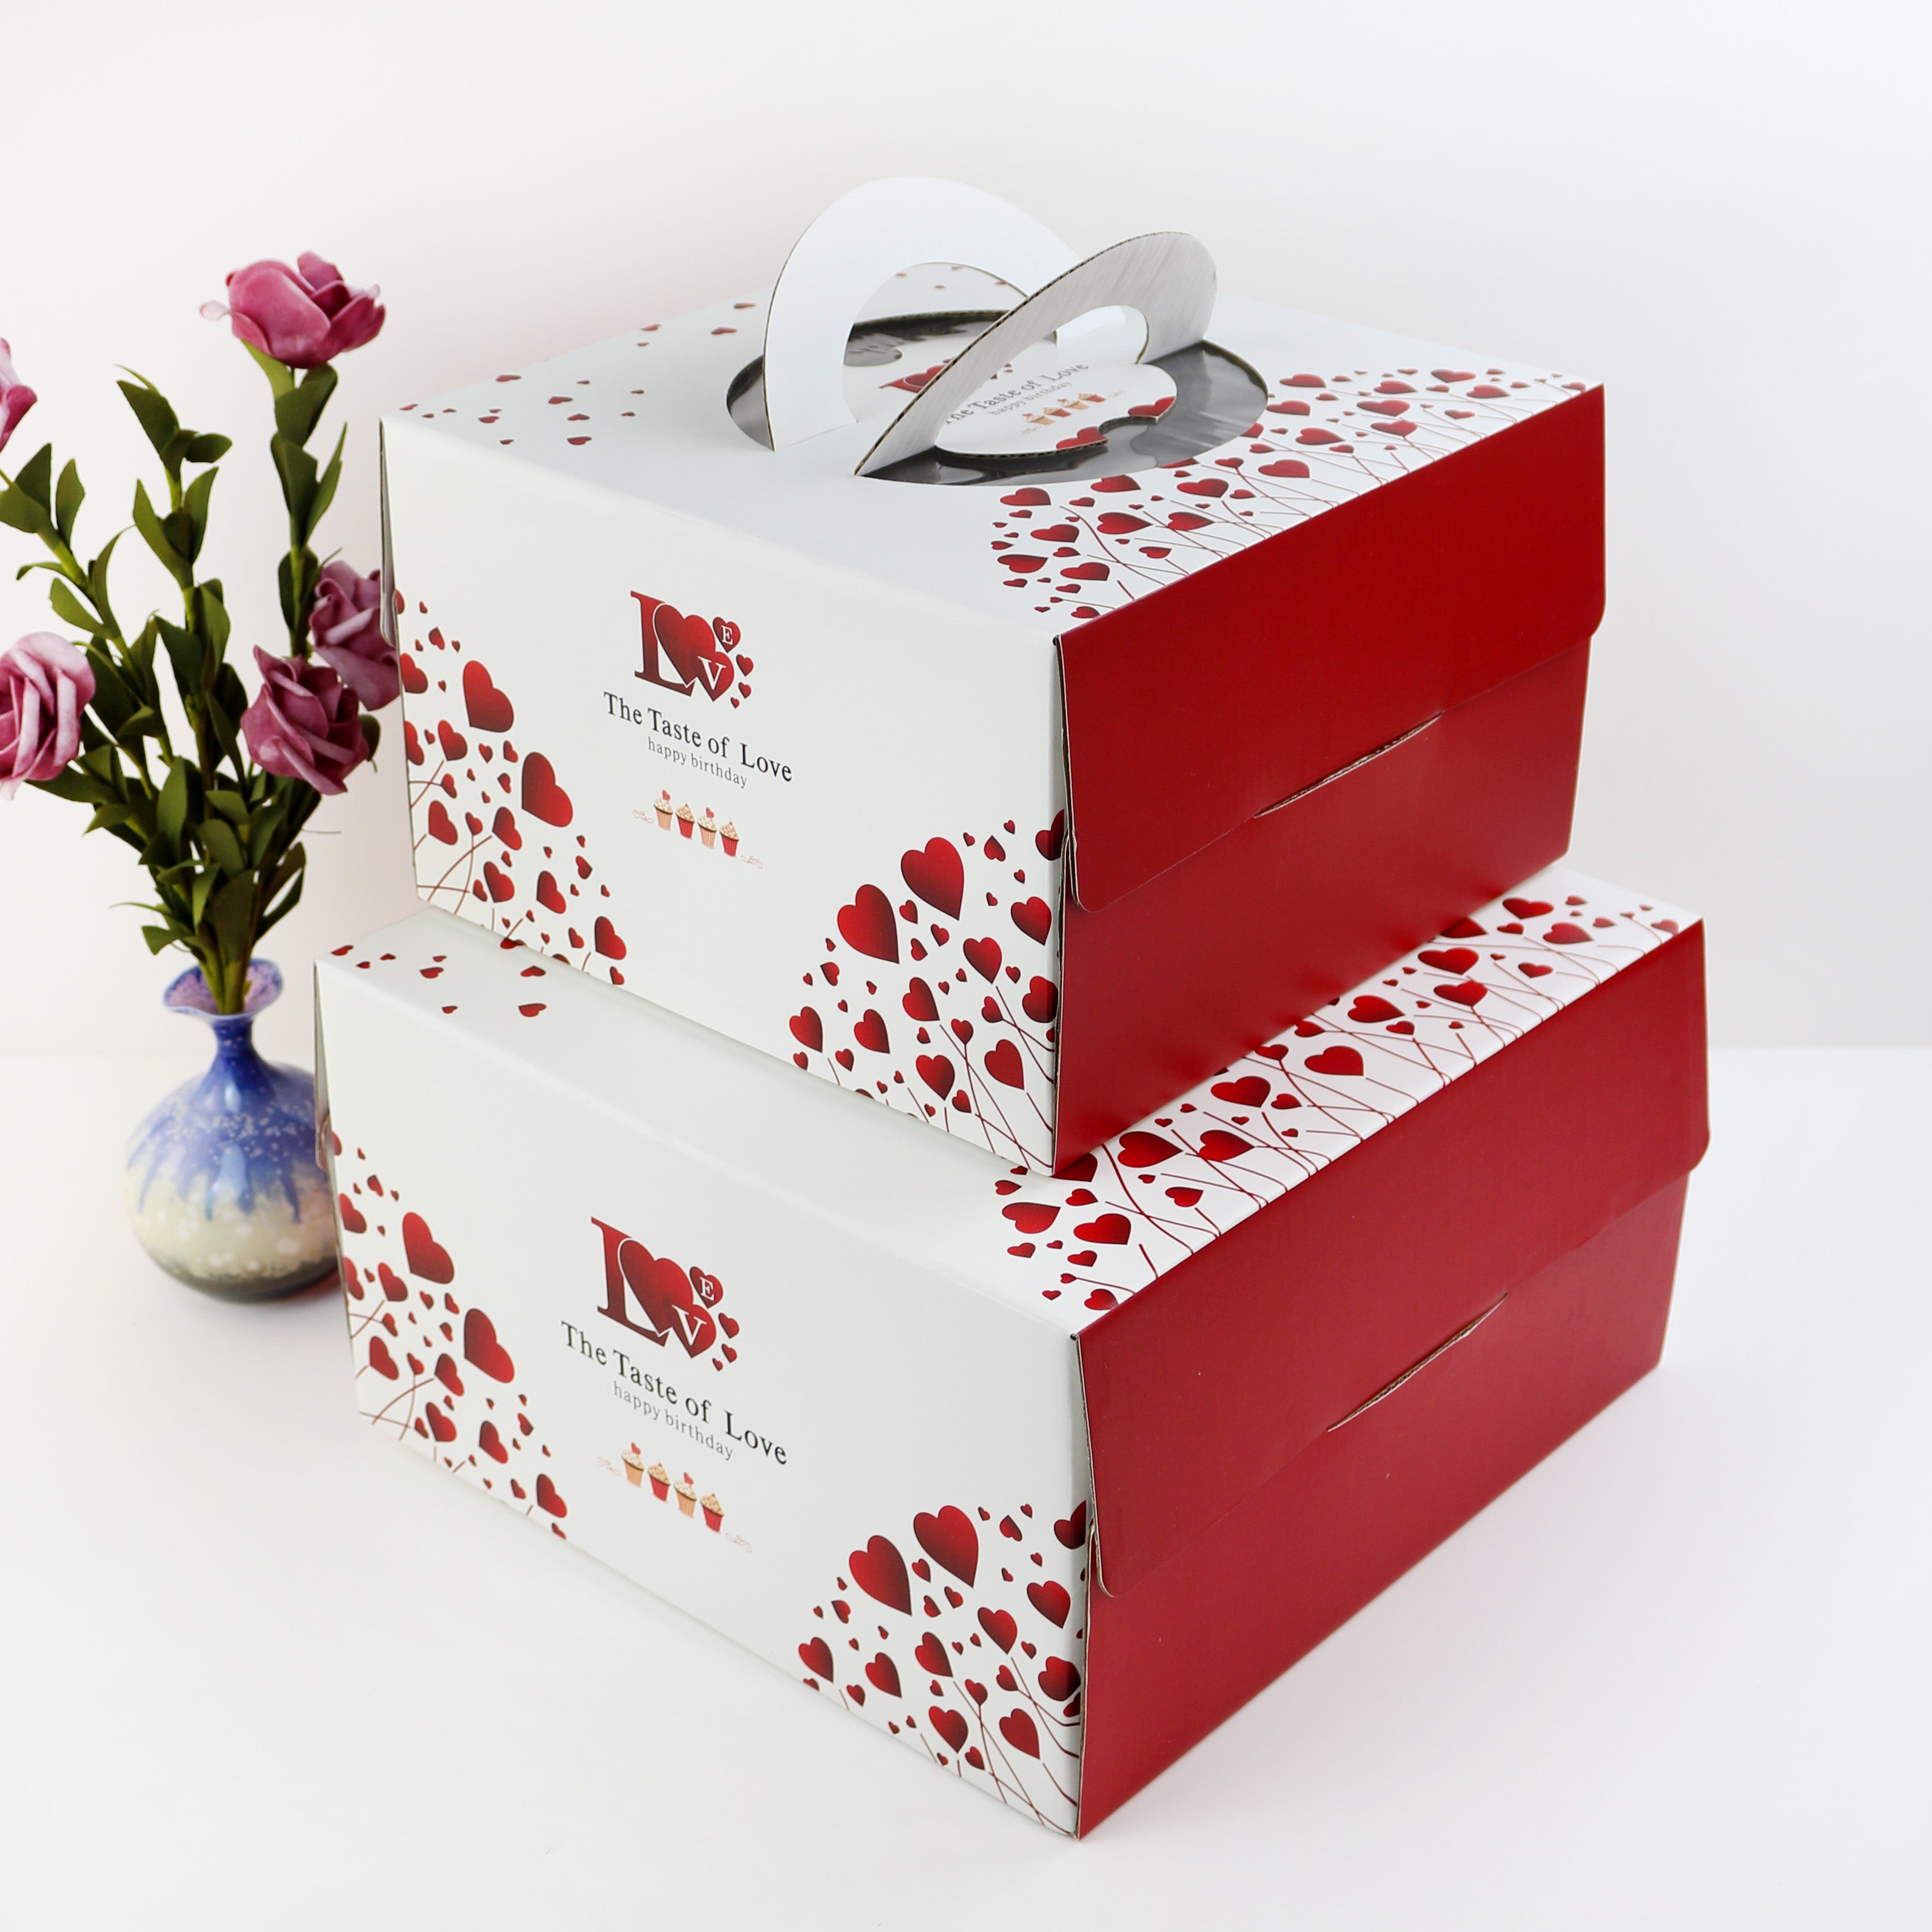 Cake Boxes Direct - Cake Boxes & Cupcake Boxes